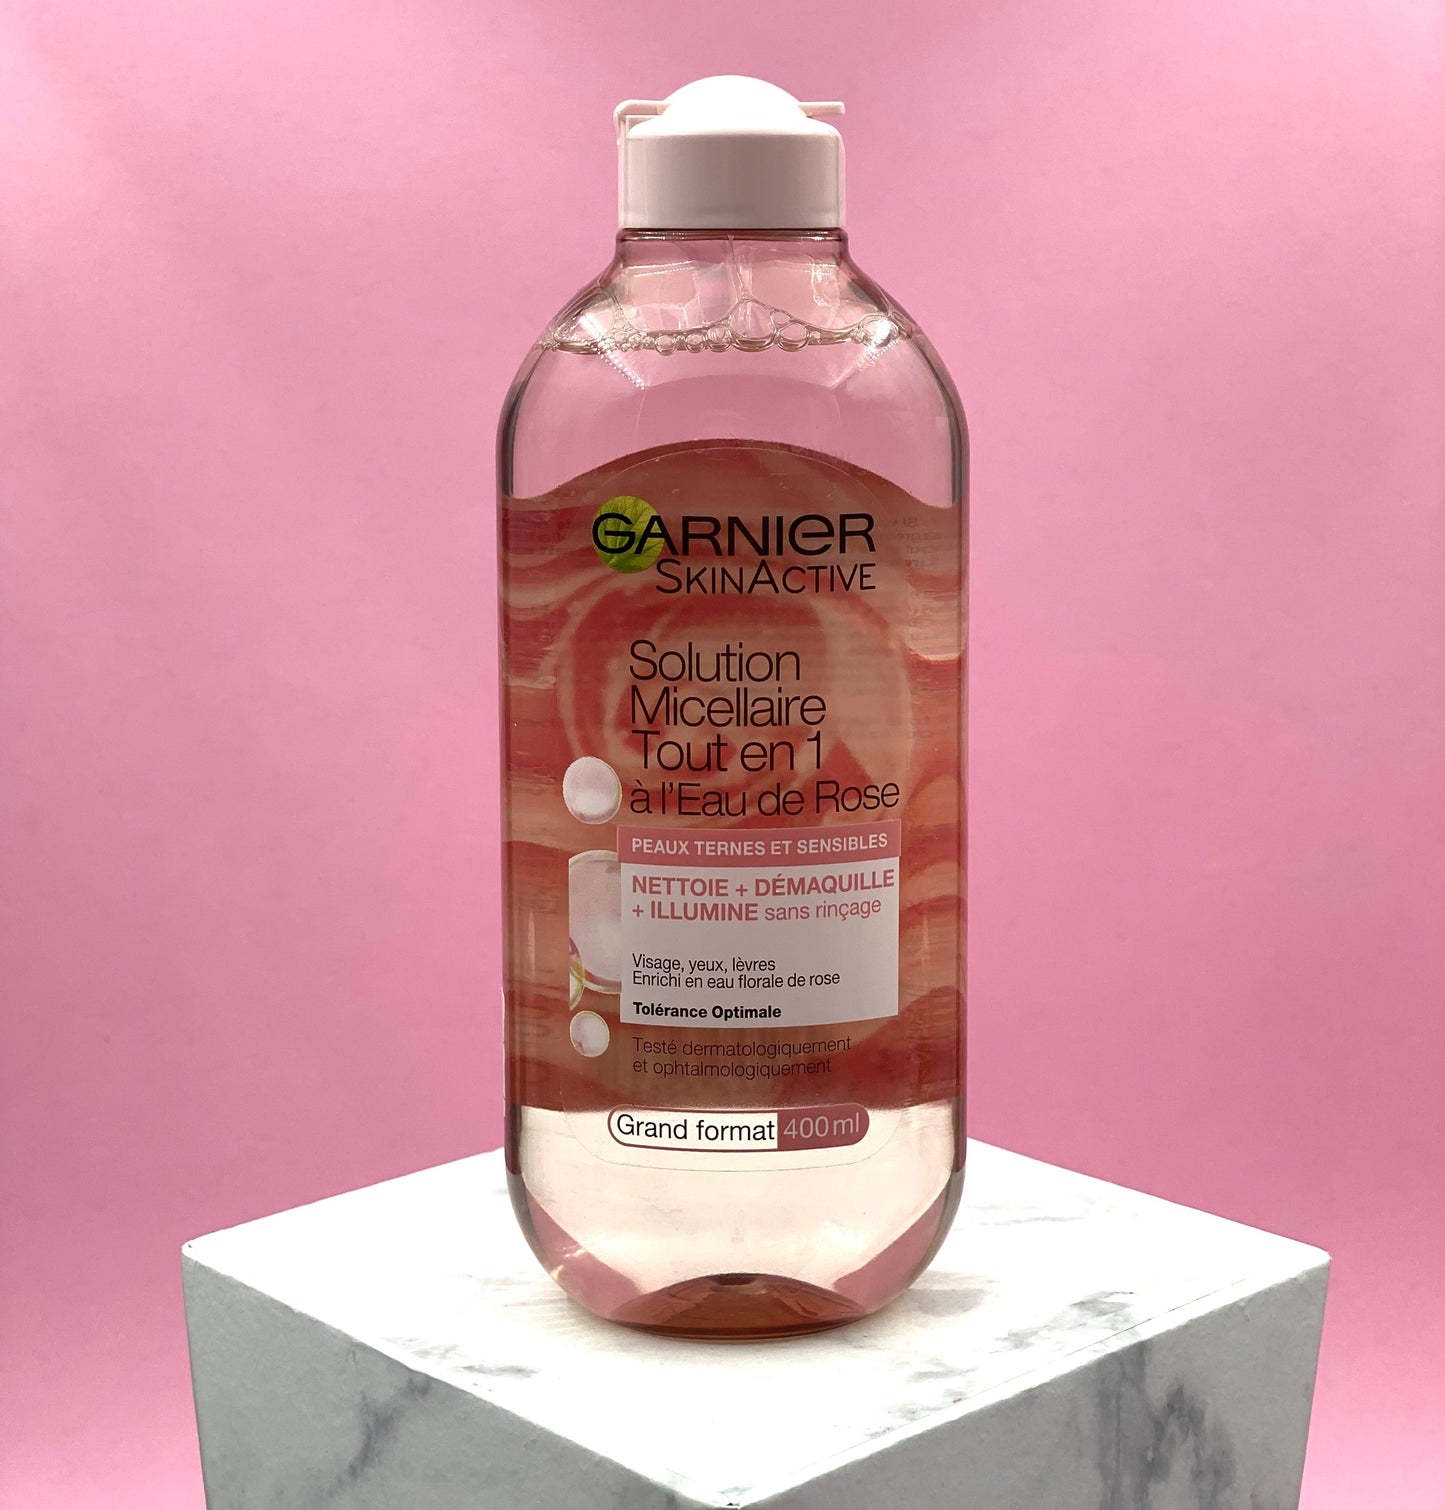 GARNIER skinactive solution micellaire à l'eau de rose tout en 1  peaux ternes et sensibles - 400 ml